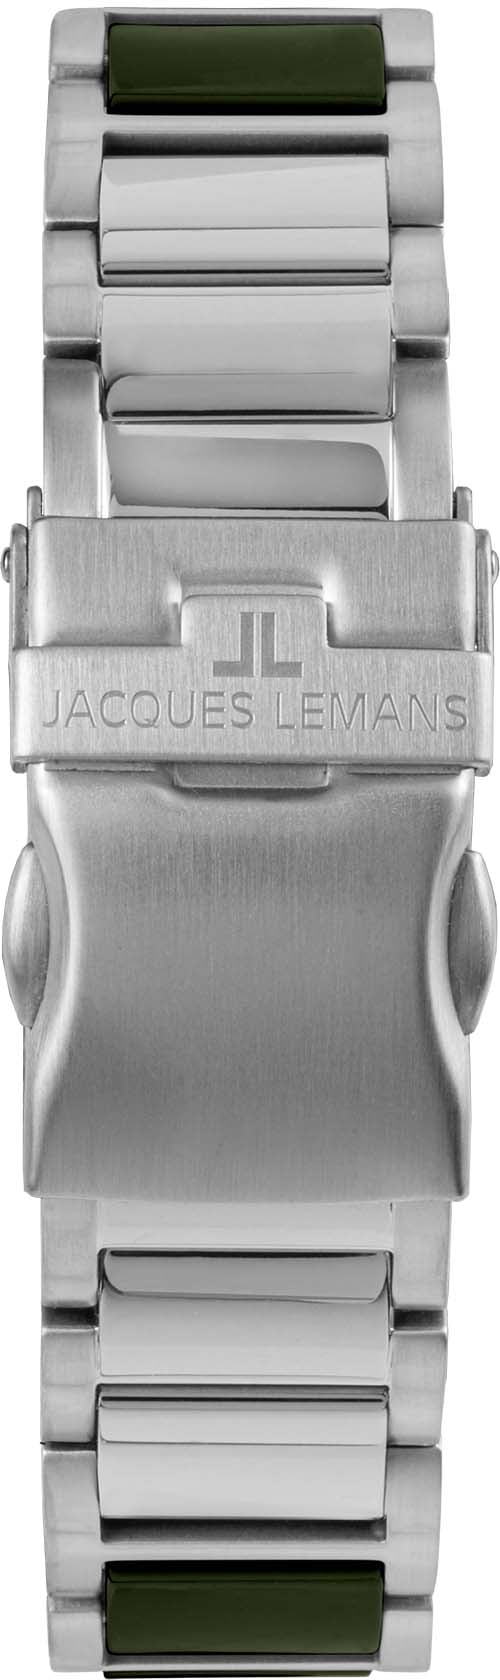 Jacques Lemans Keramikuhr »Liverpool, 42-10C«, Quarzuhr, Armbanduhr, Herrenuhr, Datum, Leuchtzeiger